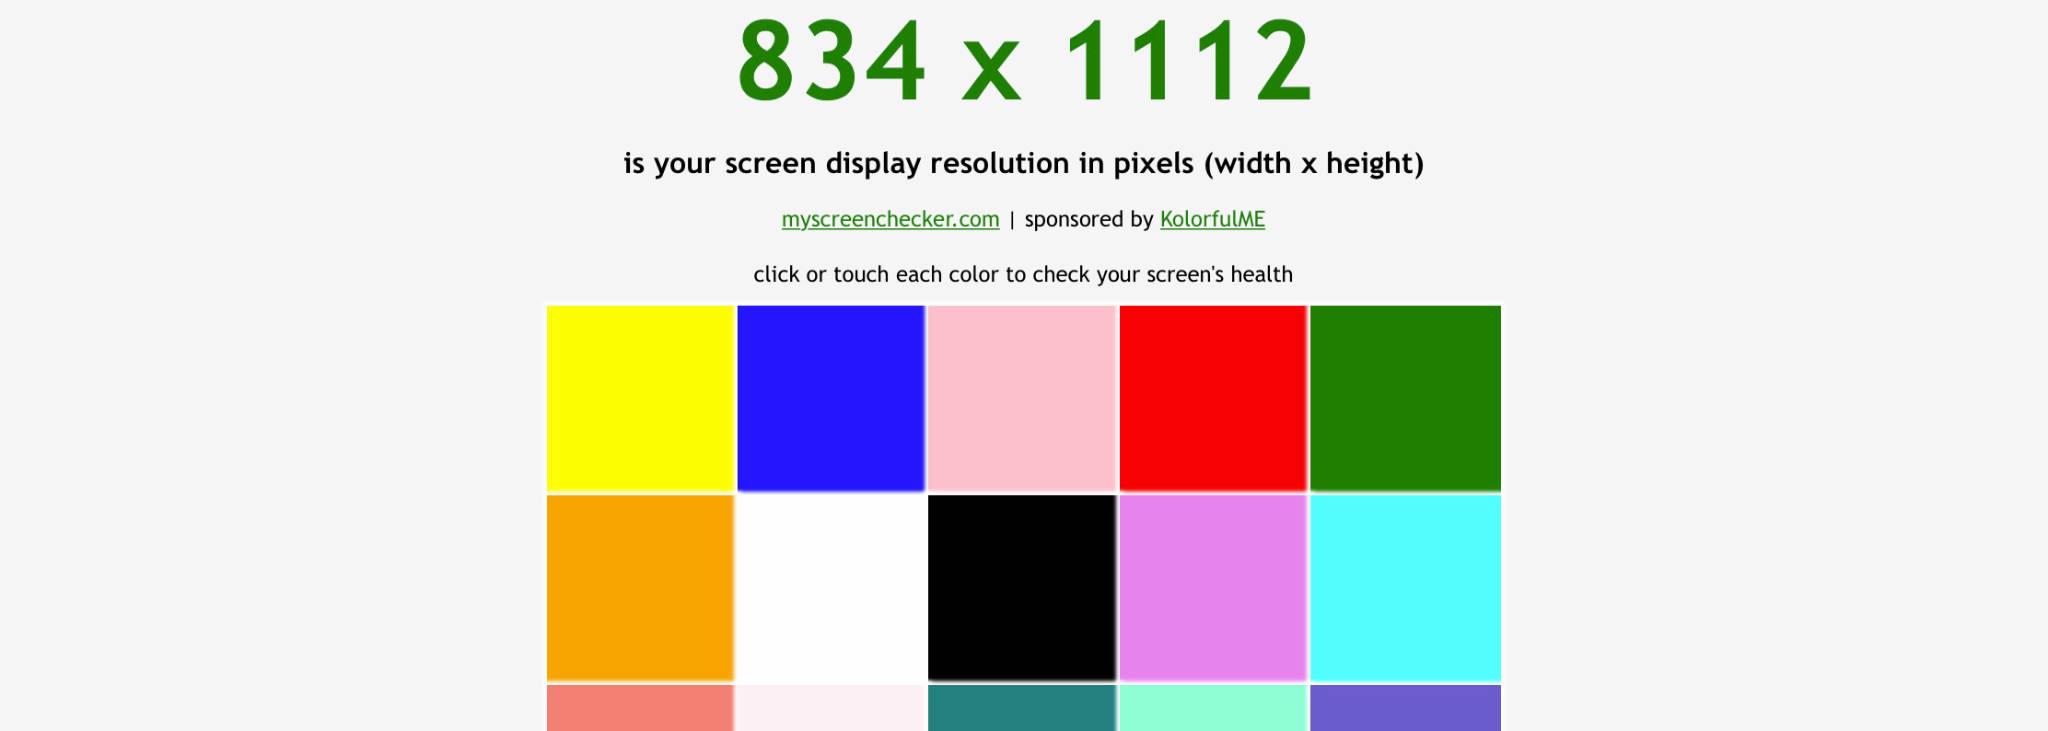 Màu màn hình rất quan trọng để trải nghiệm sử dụng máy tính được tốt nhất. Nếu bạn đang gặp vấn đề về màu màn hình, hãy tham khảo hình ảnh liên quan để tìm hiểu cách khắc phục. Một số thủ thuật đơn giản như điều chỉnh độ sáng, tăng giảm độ tương phản hay thay đổi màu sắc của màn hình có thể giúp bạn khắc phục tình trạng này một cách dễ dàng.